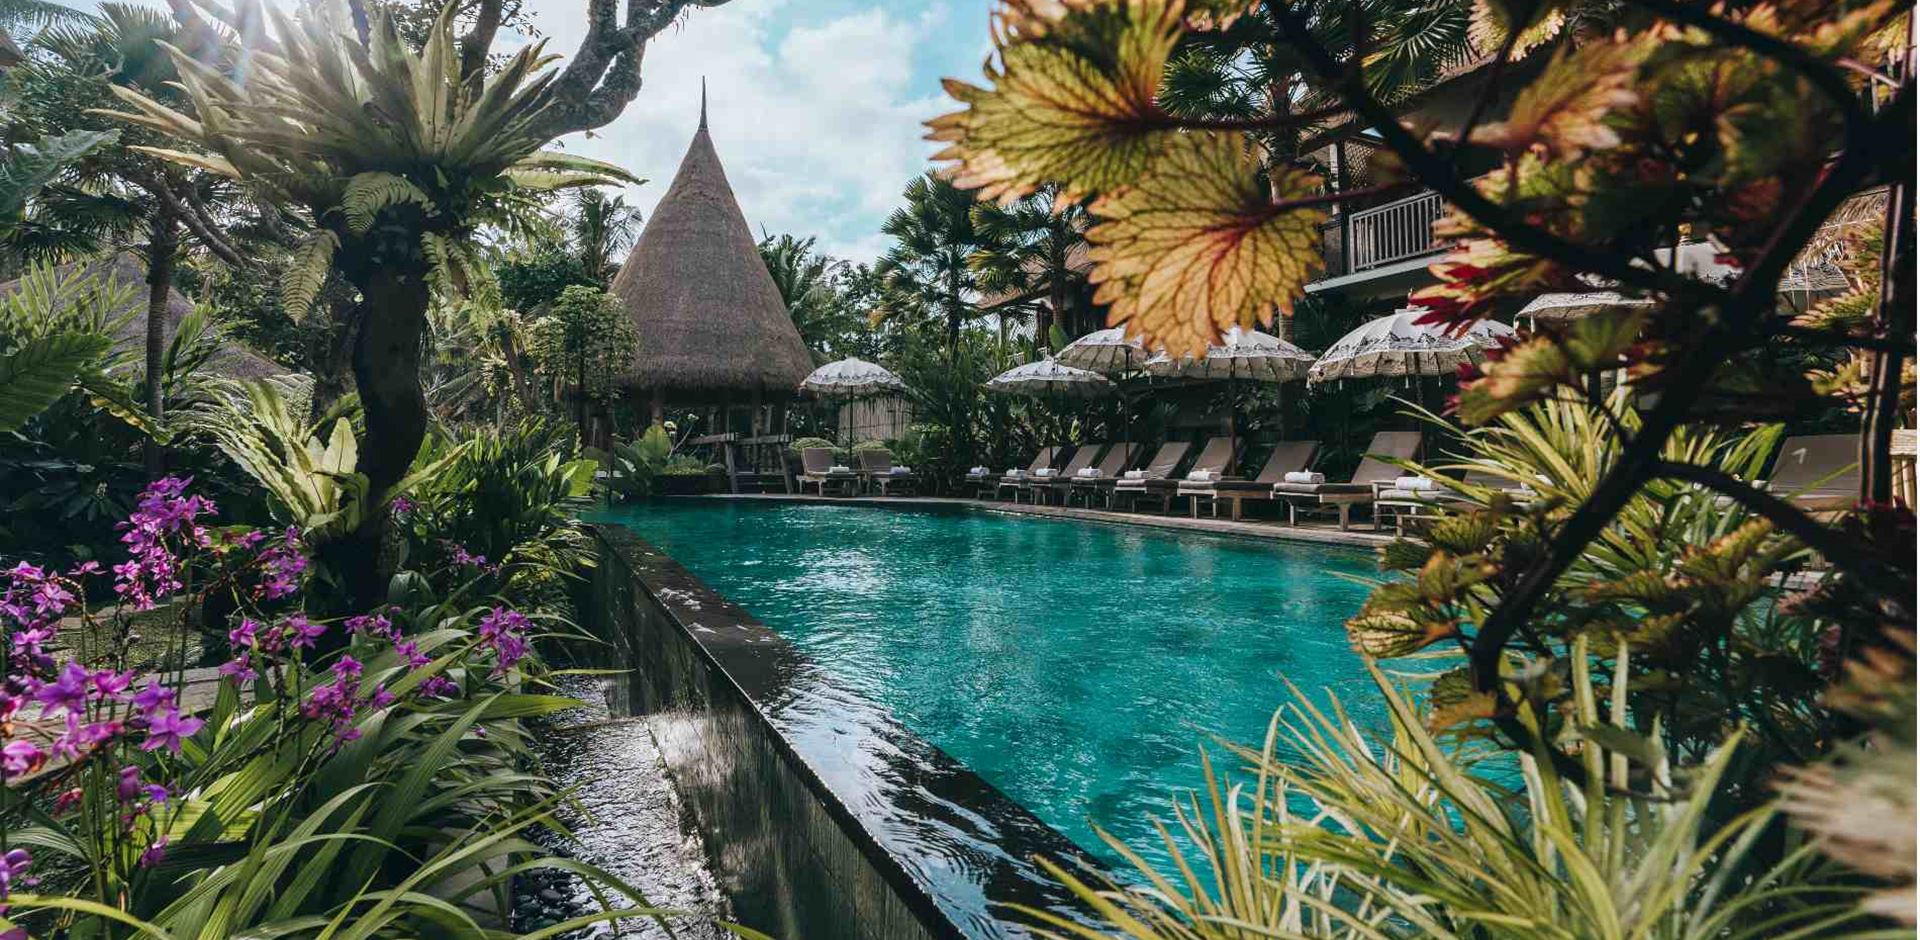 Indonesien, Bali, Ubud, The Alena Resort, Pool Area